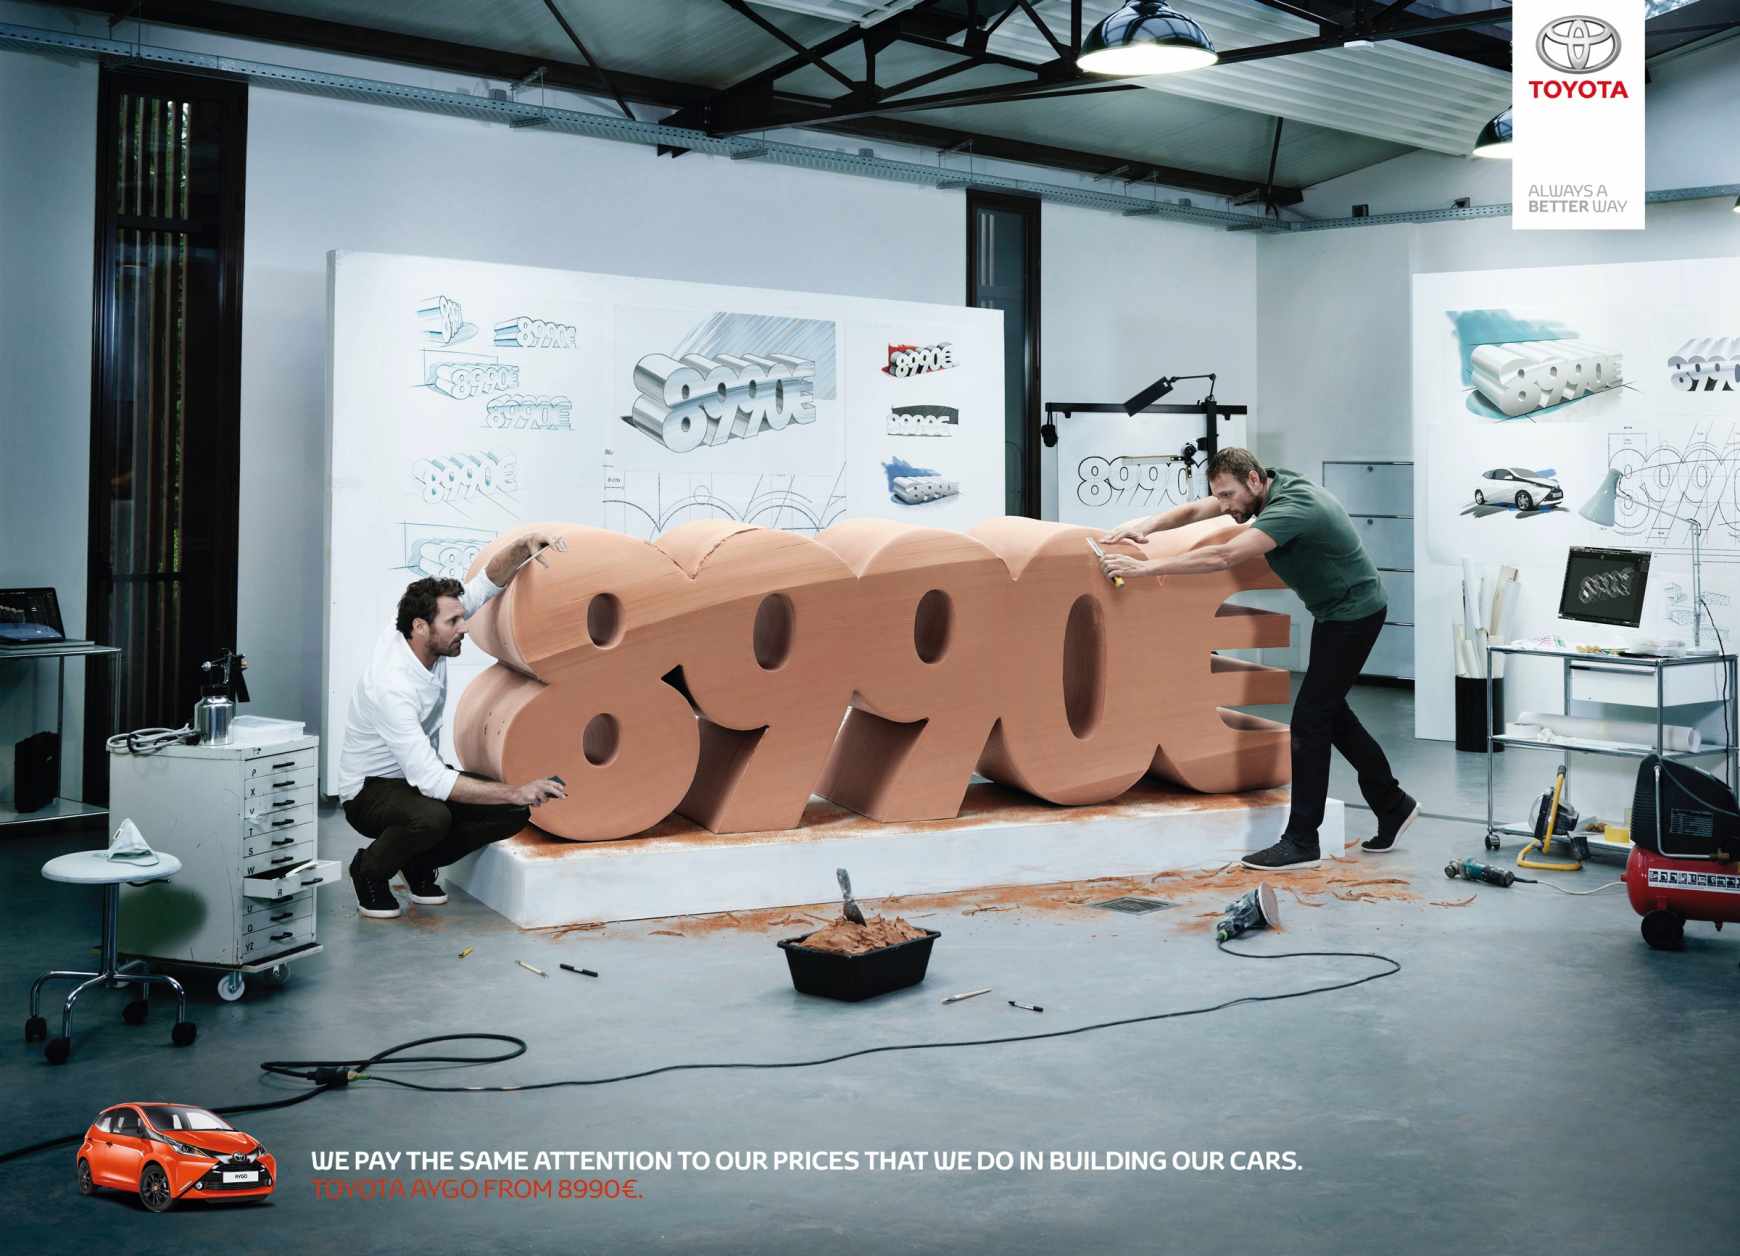 丰田法国“超值价格”篇平面广告创意设计-上海广告设计公司1